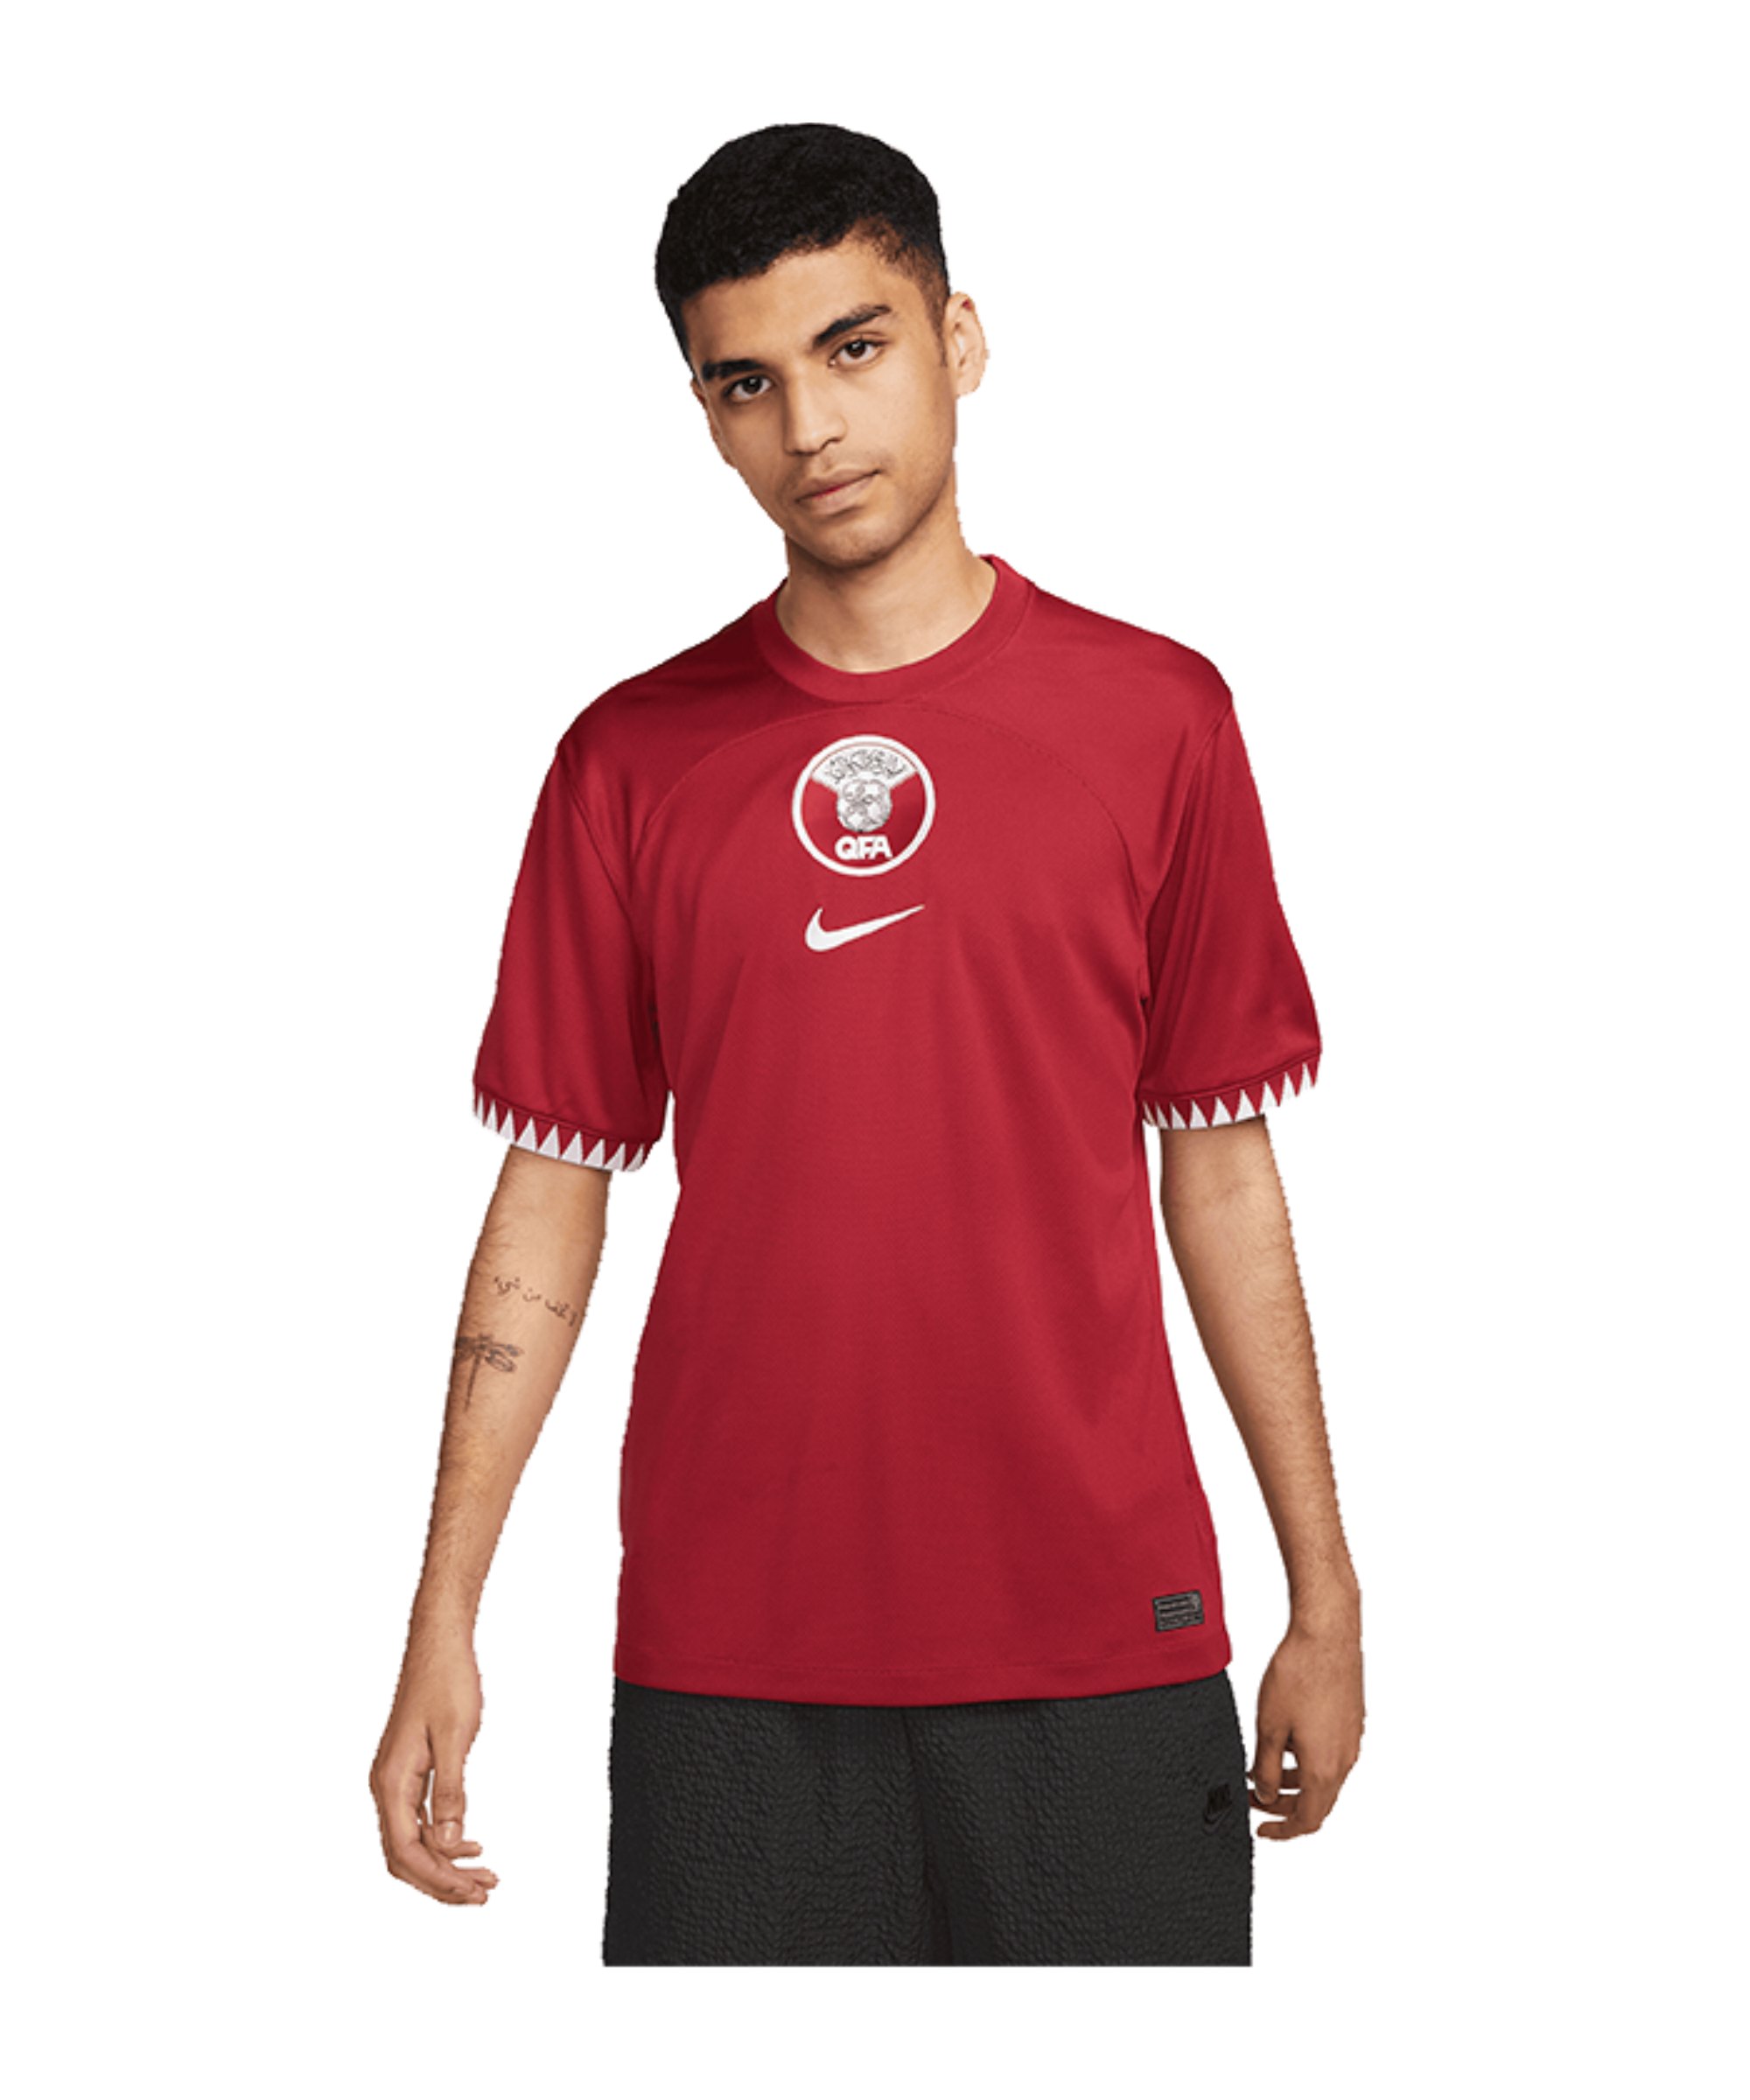 Nike Katar Trikot Home WM 2022 Rot F647 - rot